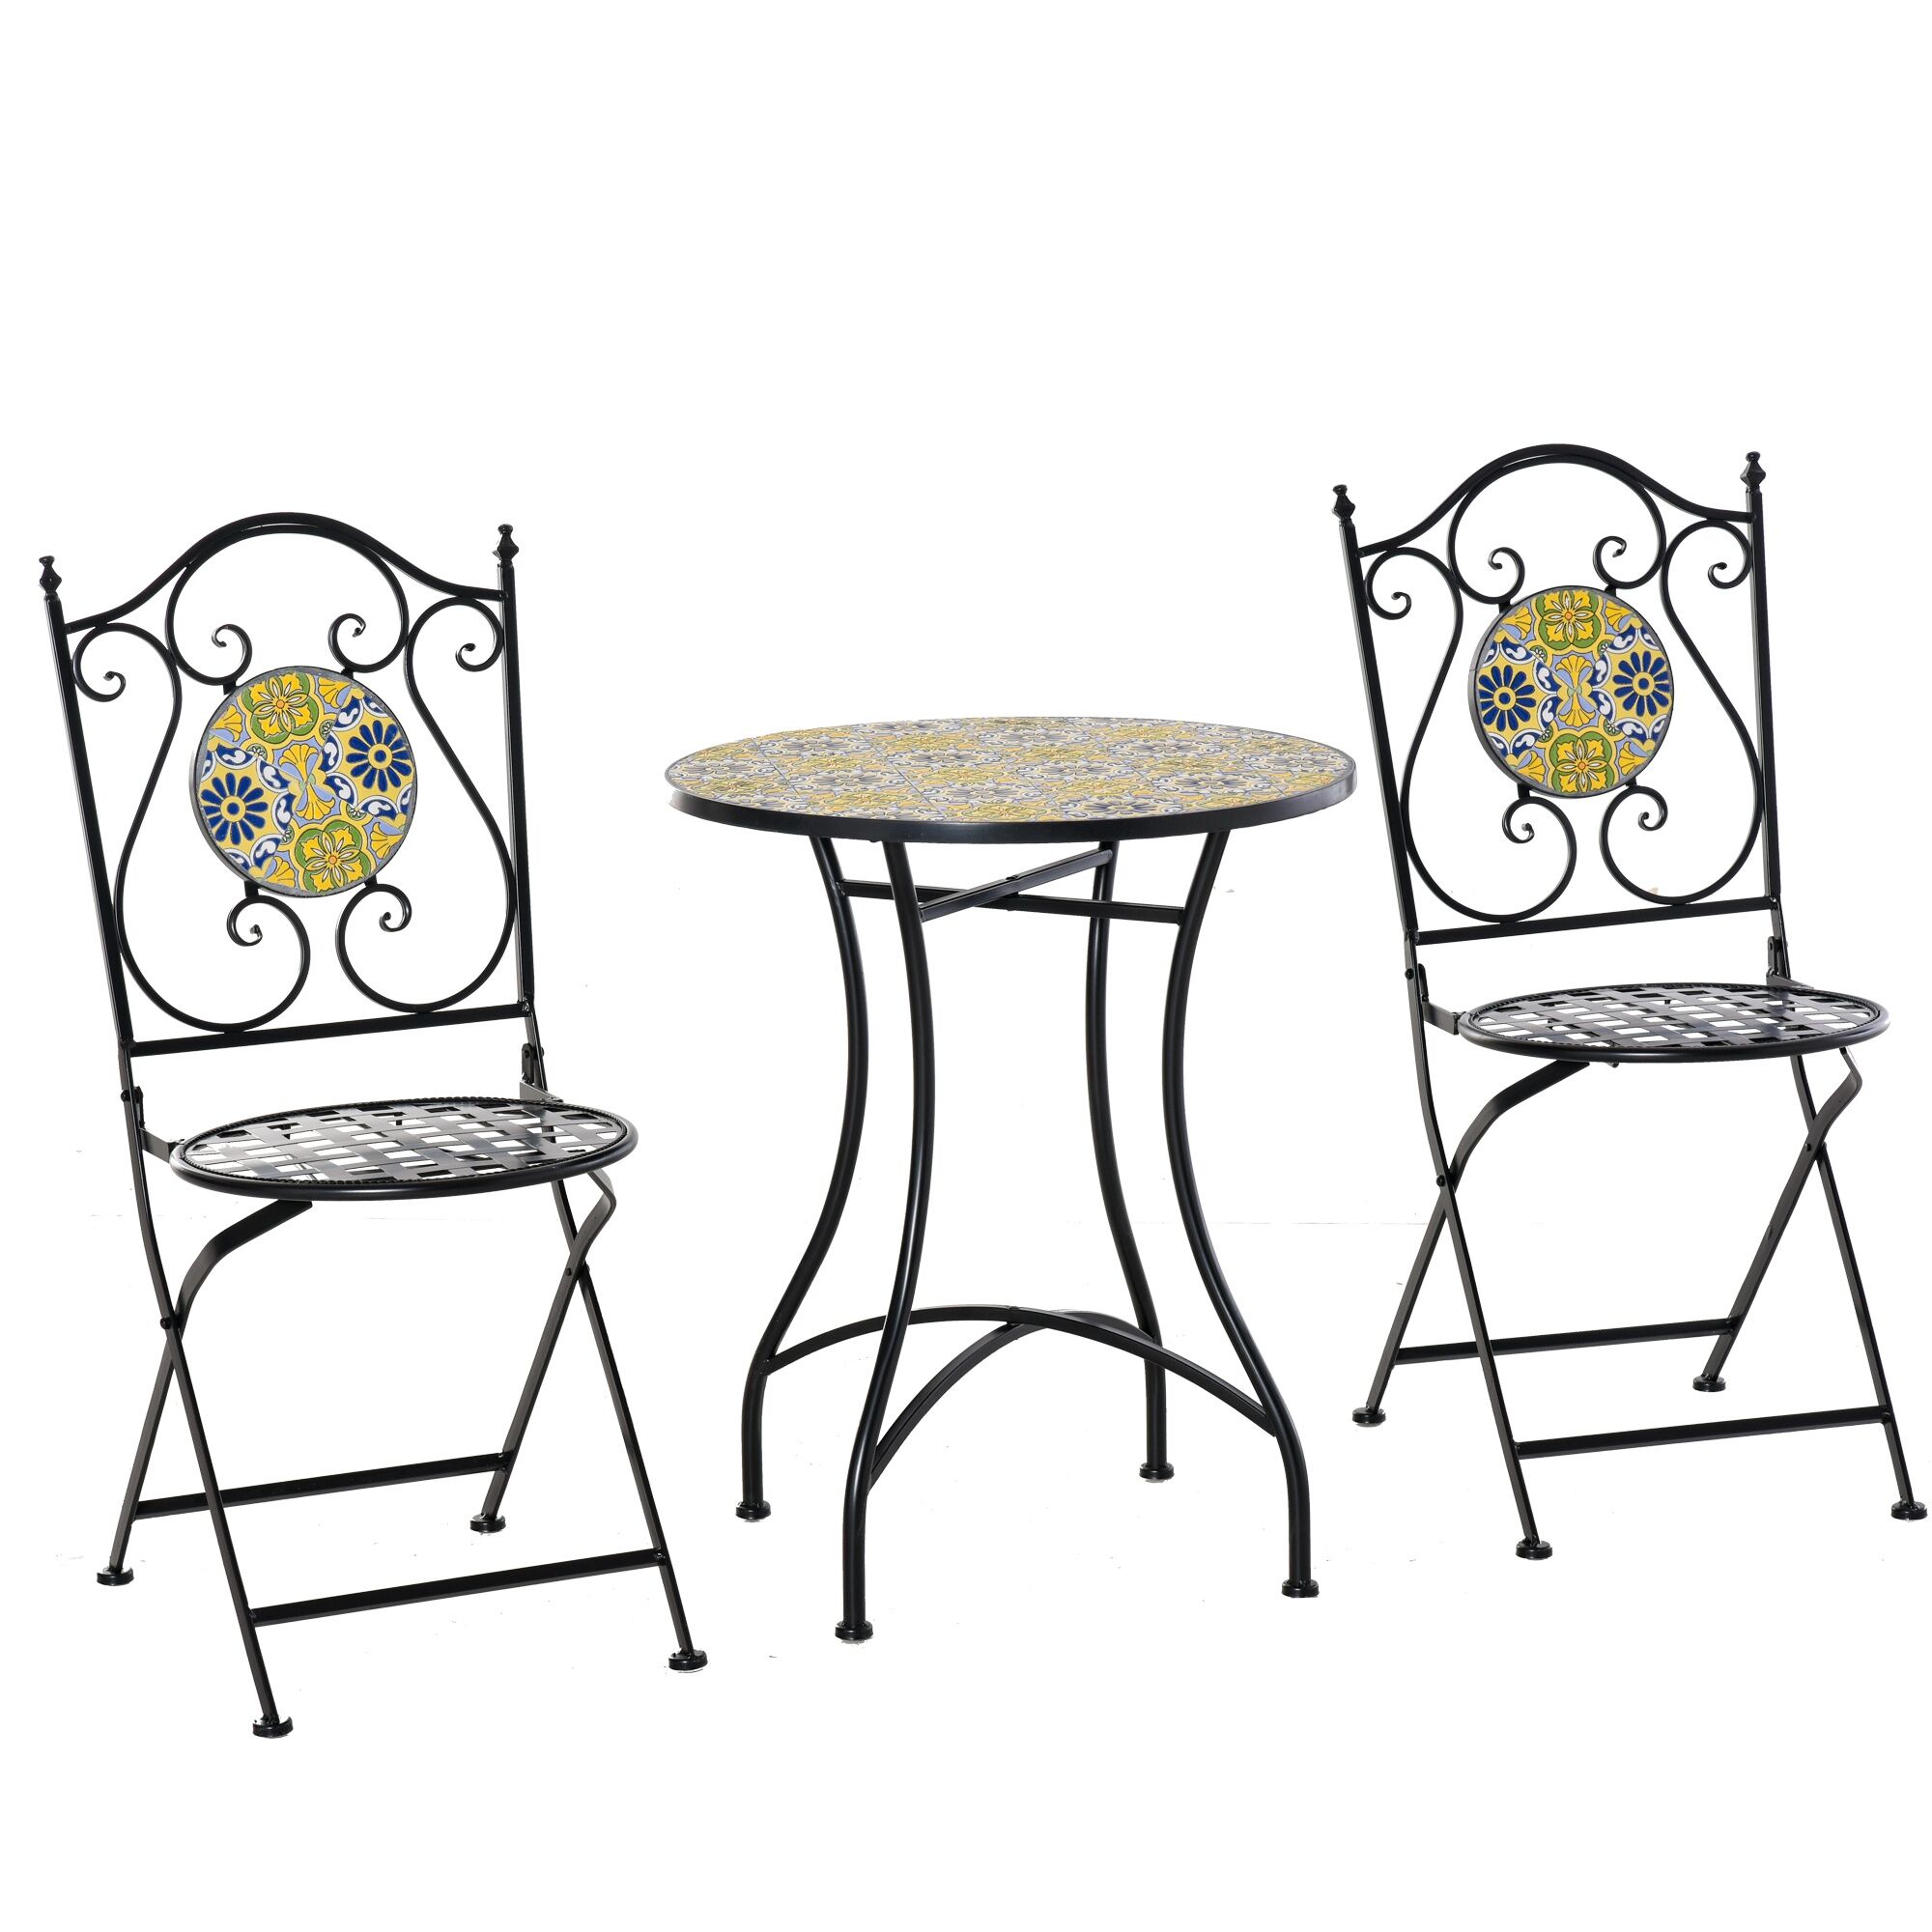 outsunny set tavolo e sedie da giardino 3 pezzi, mobili da esterno pieghevoli in metallo con maioliche colorate